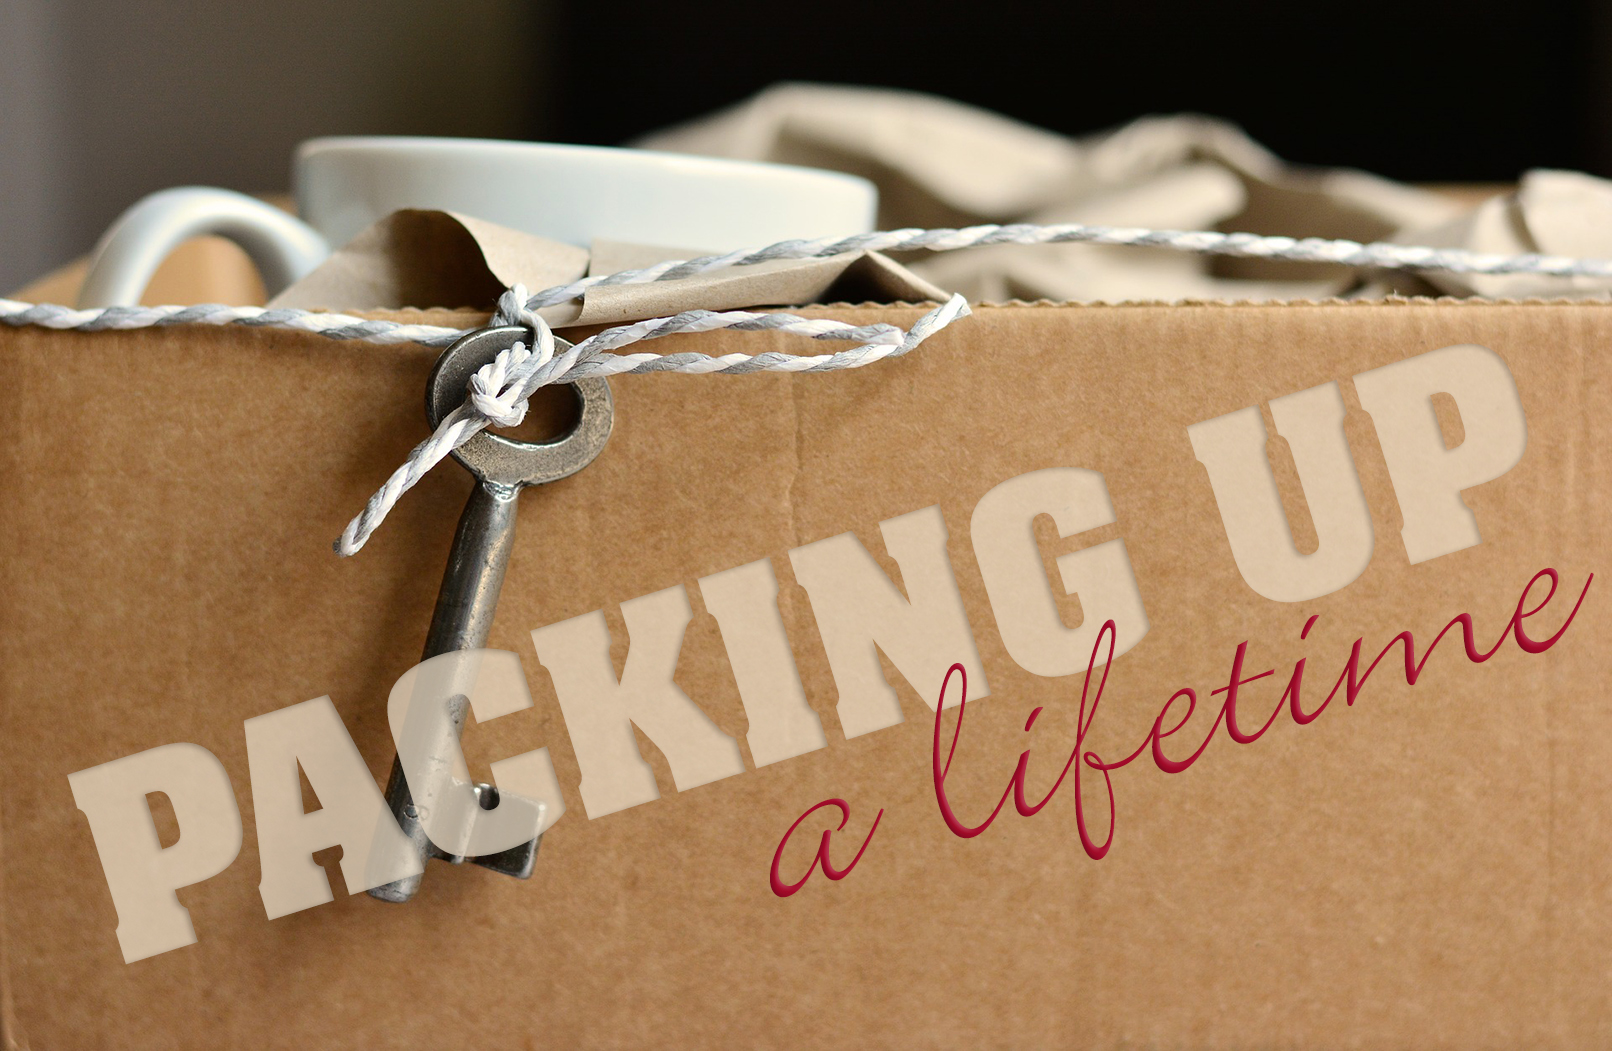 Packing-Lifetime.jpg